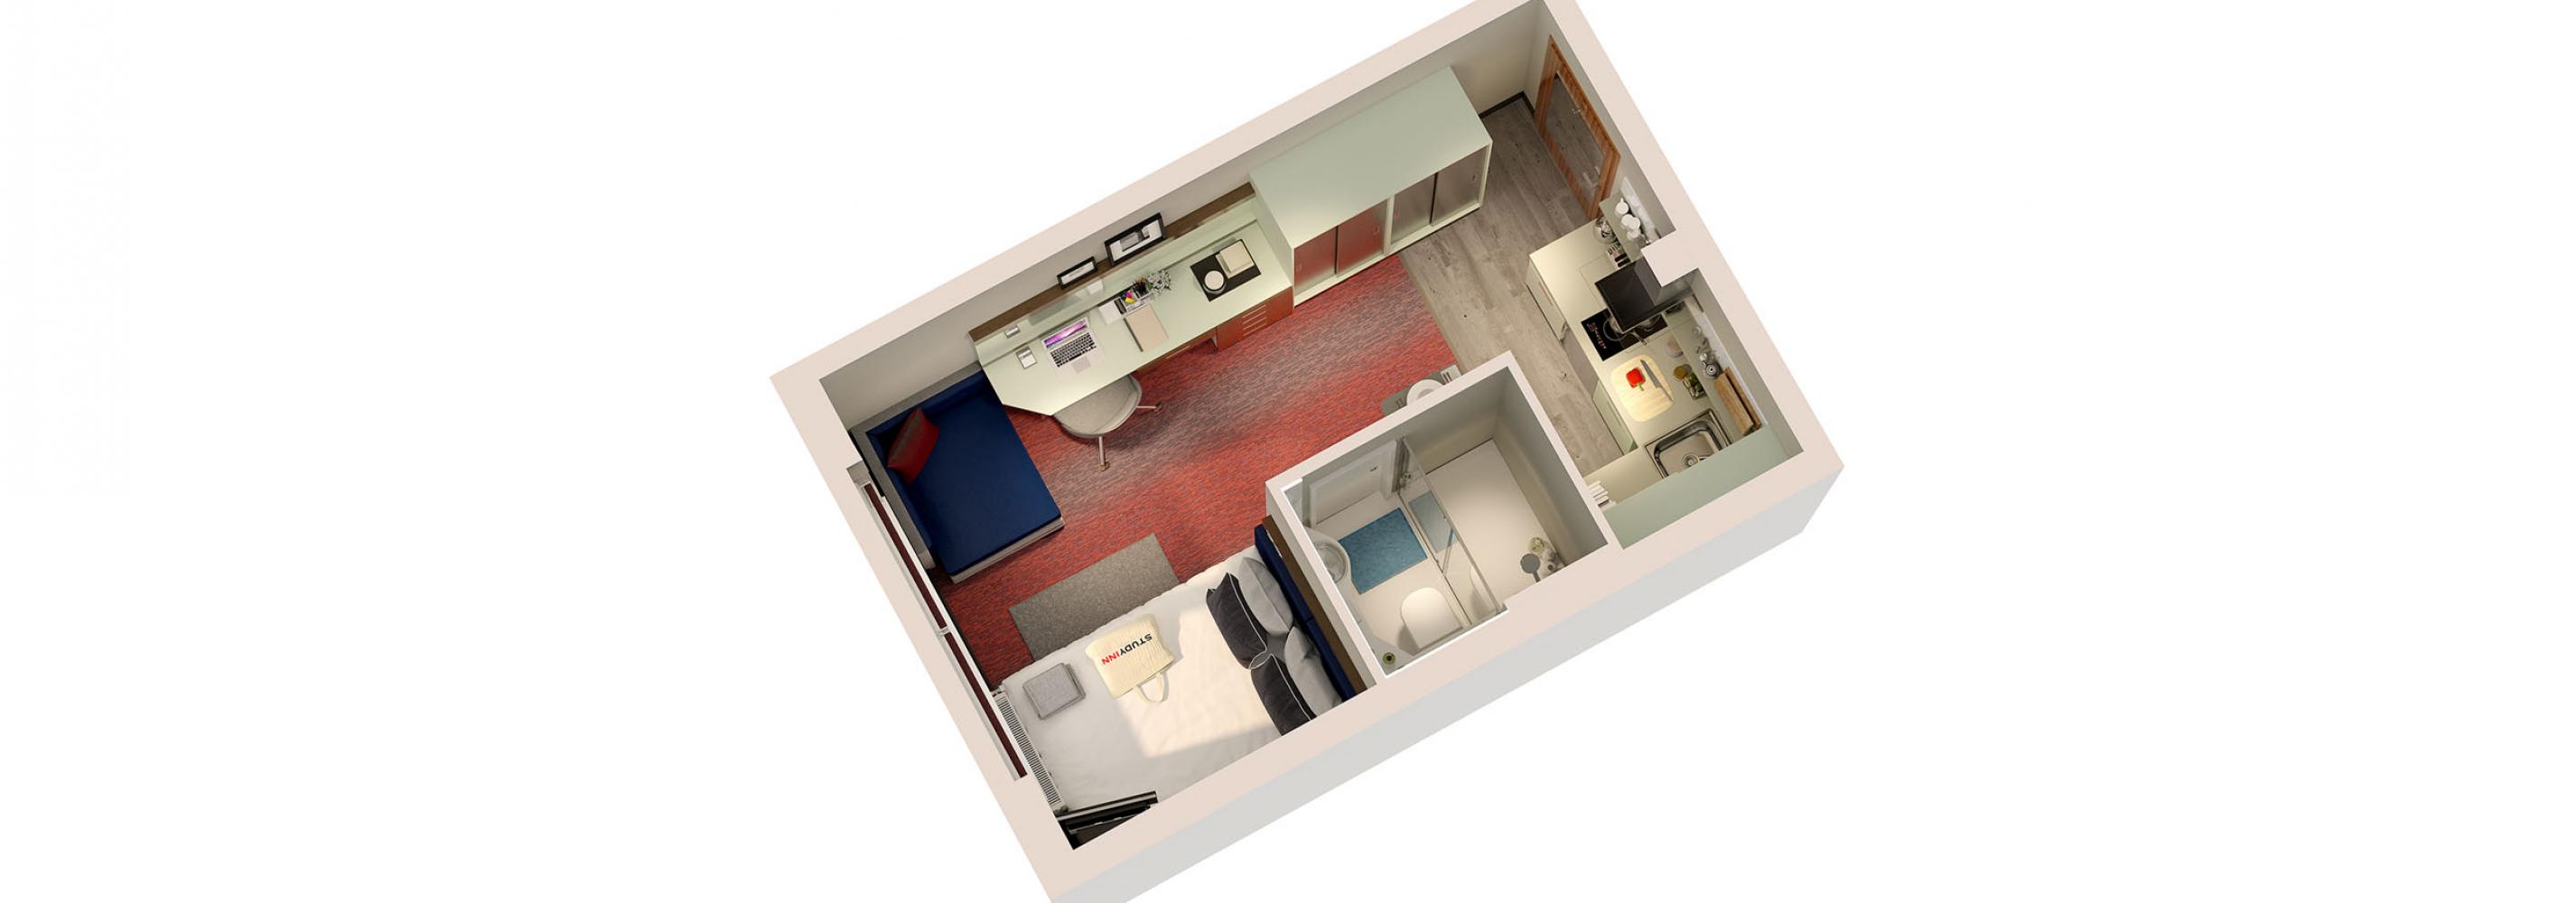 Room floorplan